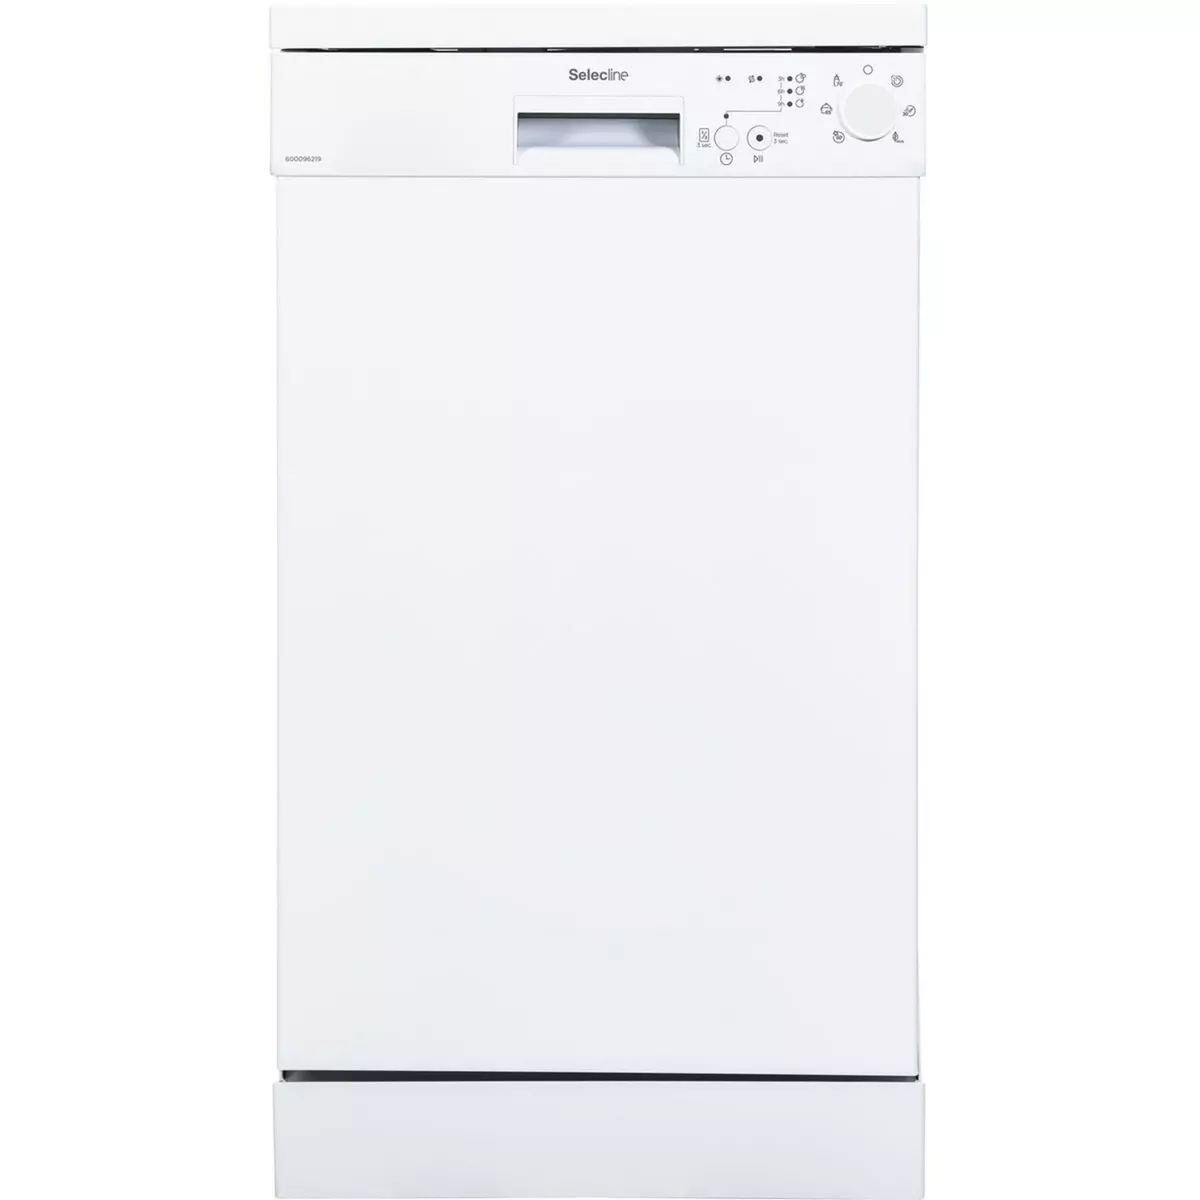 SELECLINE Lave vaisselle pose libre 600096219, 10 couverts, 45 cm, 49 dB, 6 programmes, E